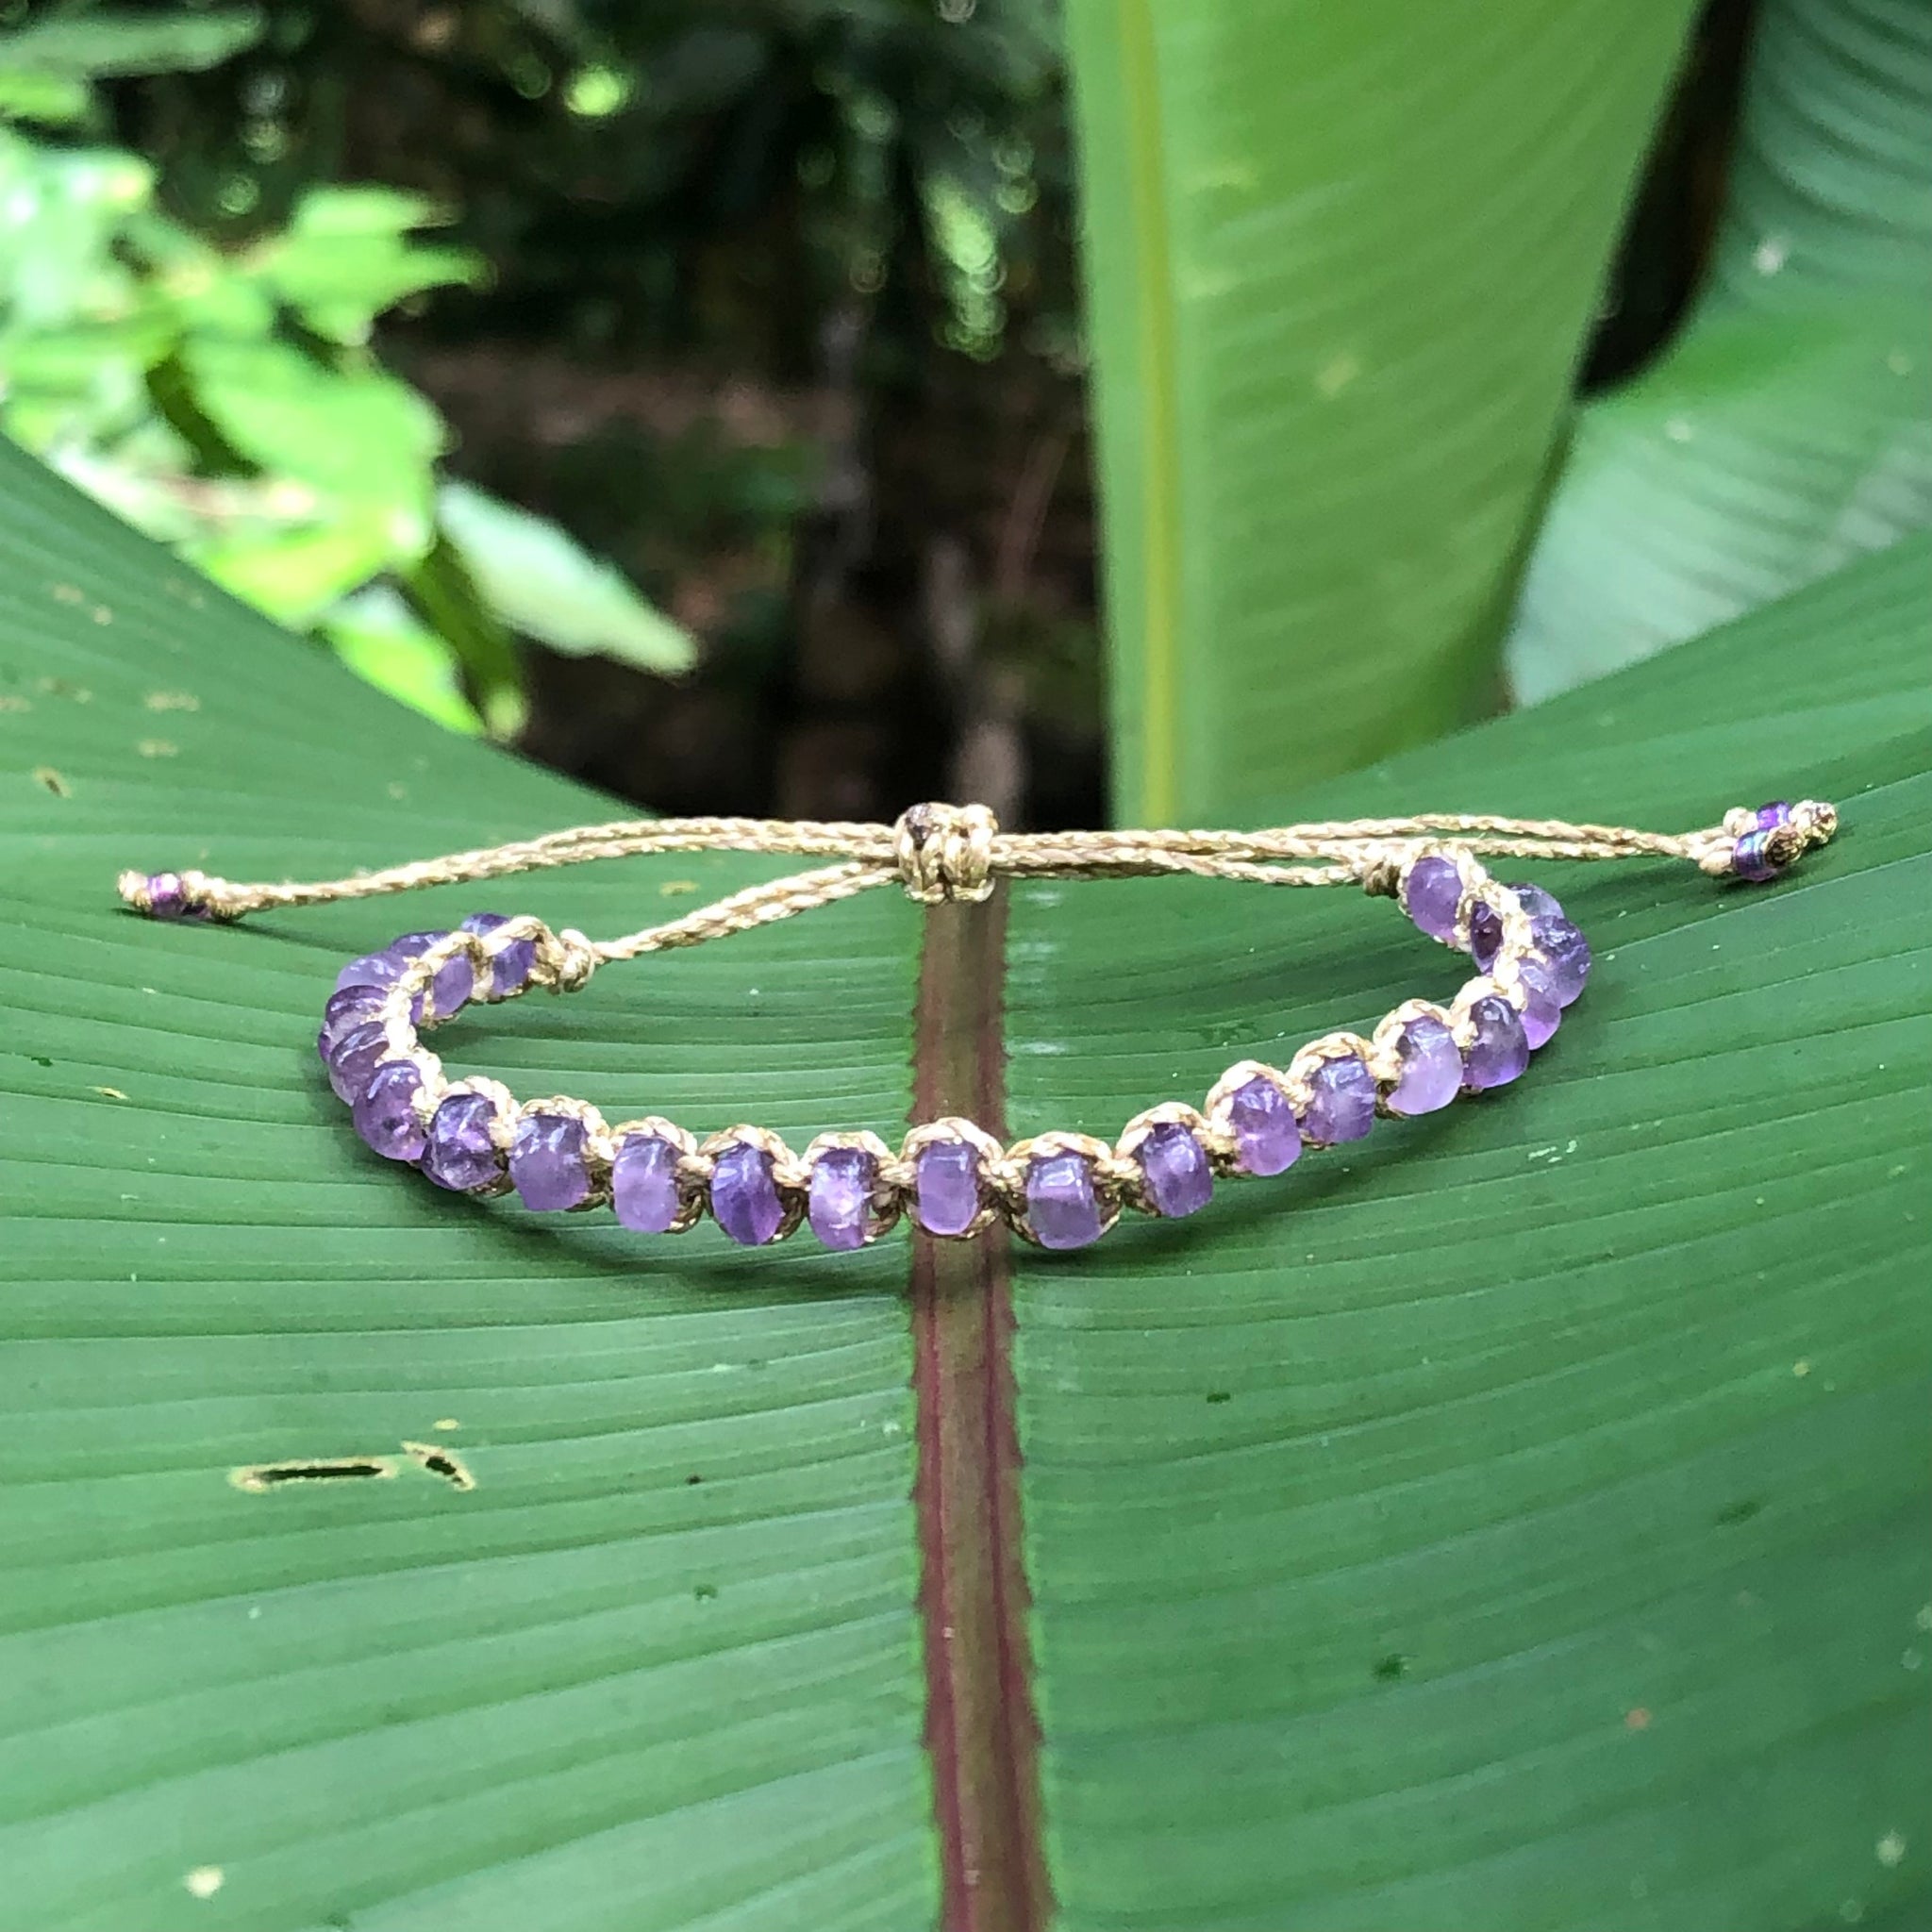 Amethyst Heishi Gemstone Bracelet - Choose the string color!